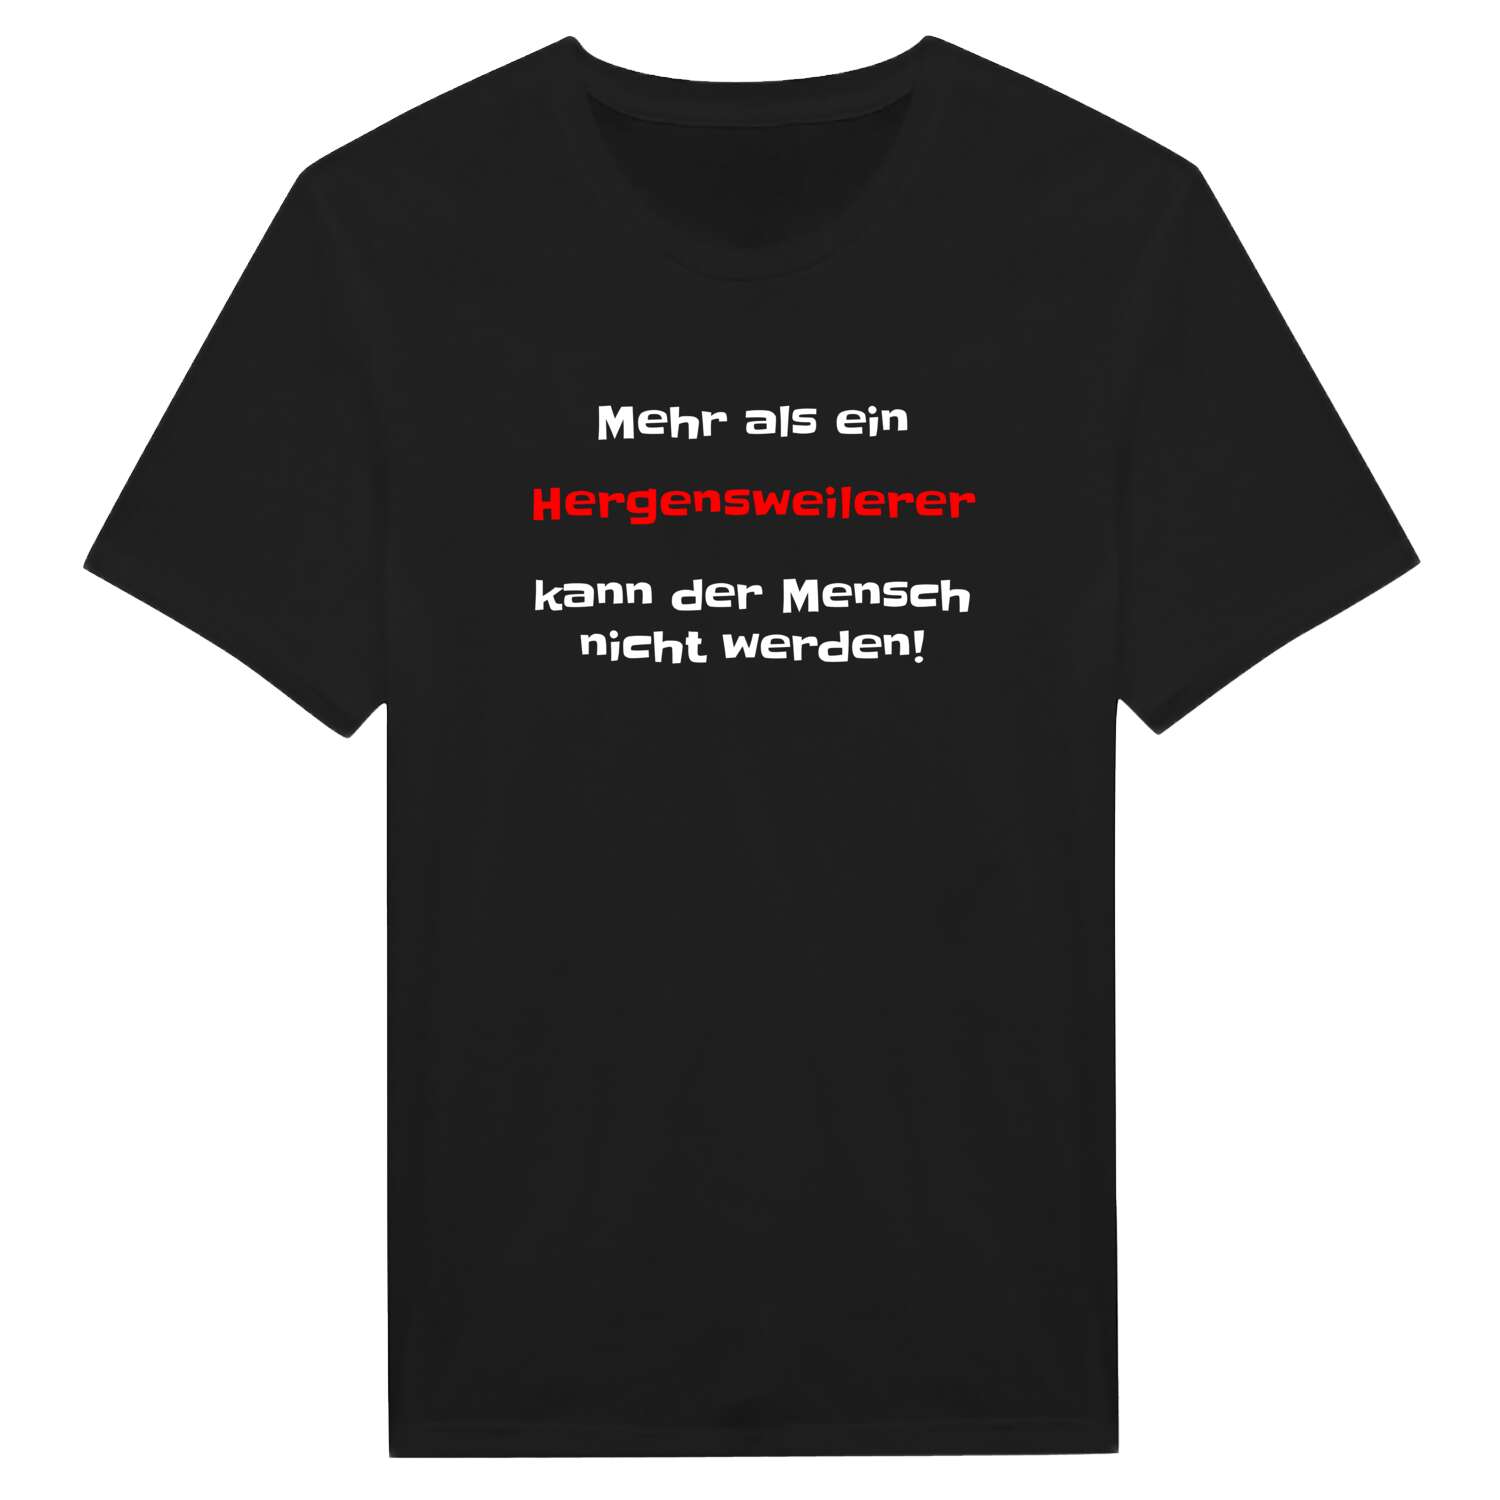 Hergensweiler T-Shirt »Mehr als ein«